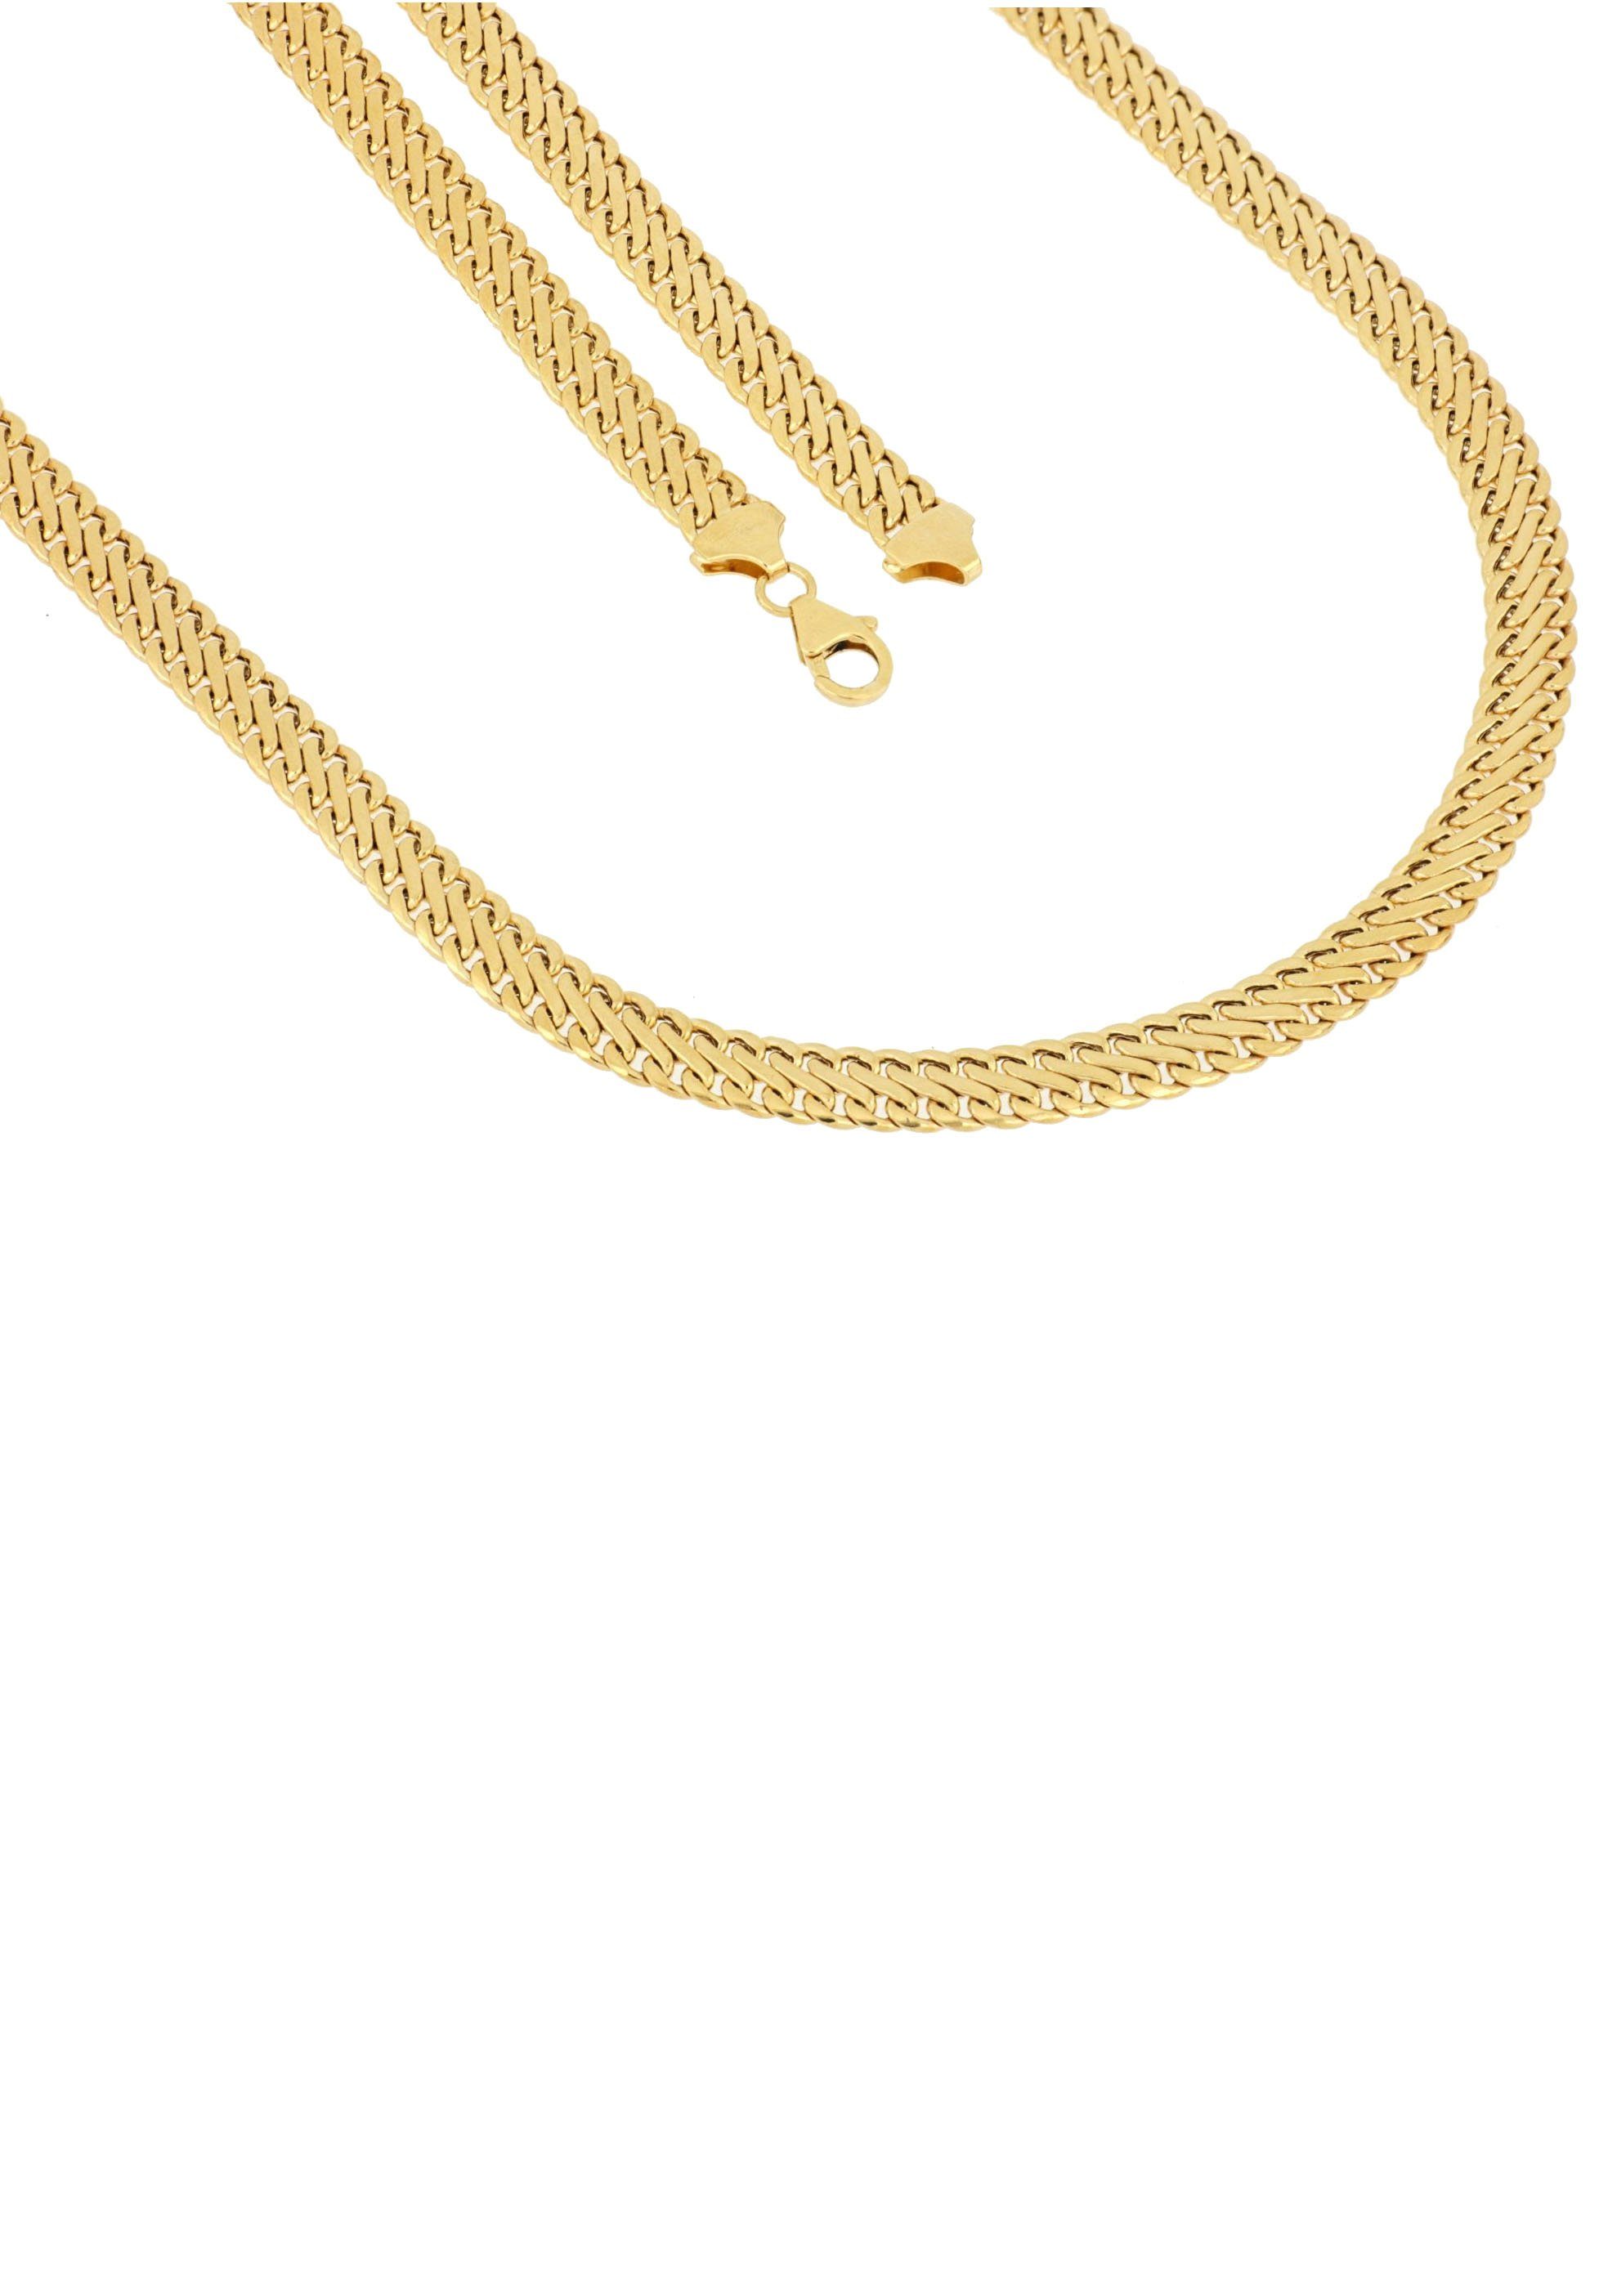 Firetti Goldkette »In Achterkettengliederung, 6,5 mm breit, Glanz,  bombadiert« online kaufen | OTTO